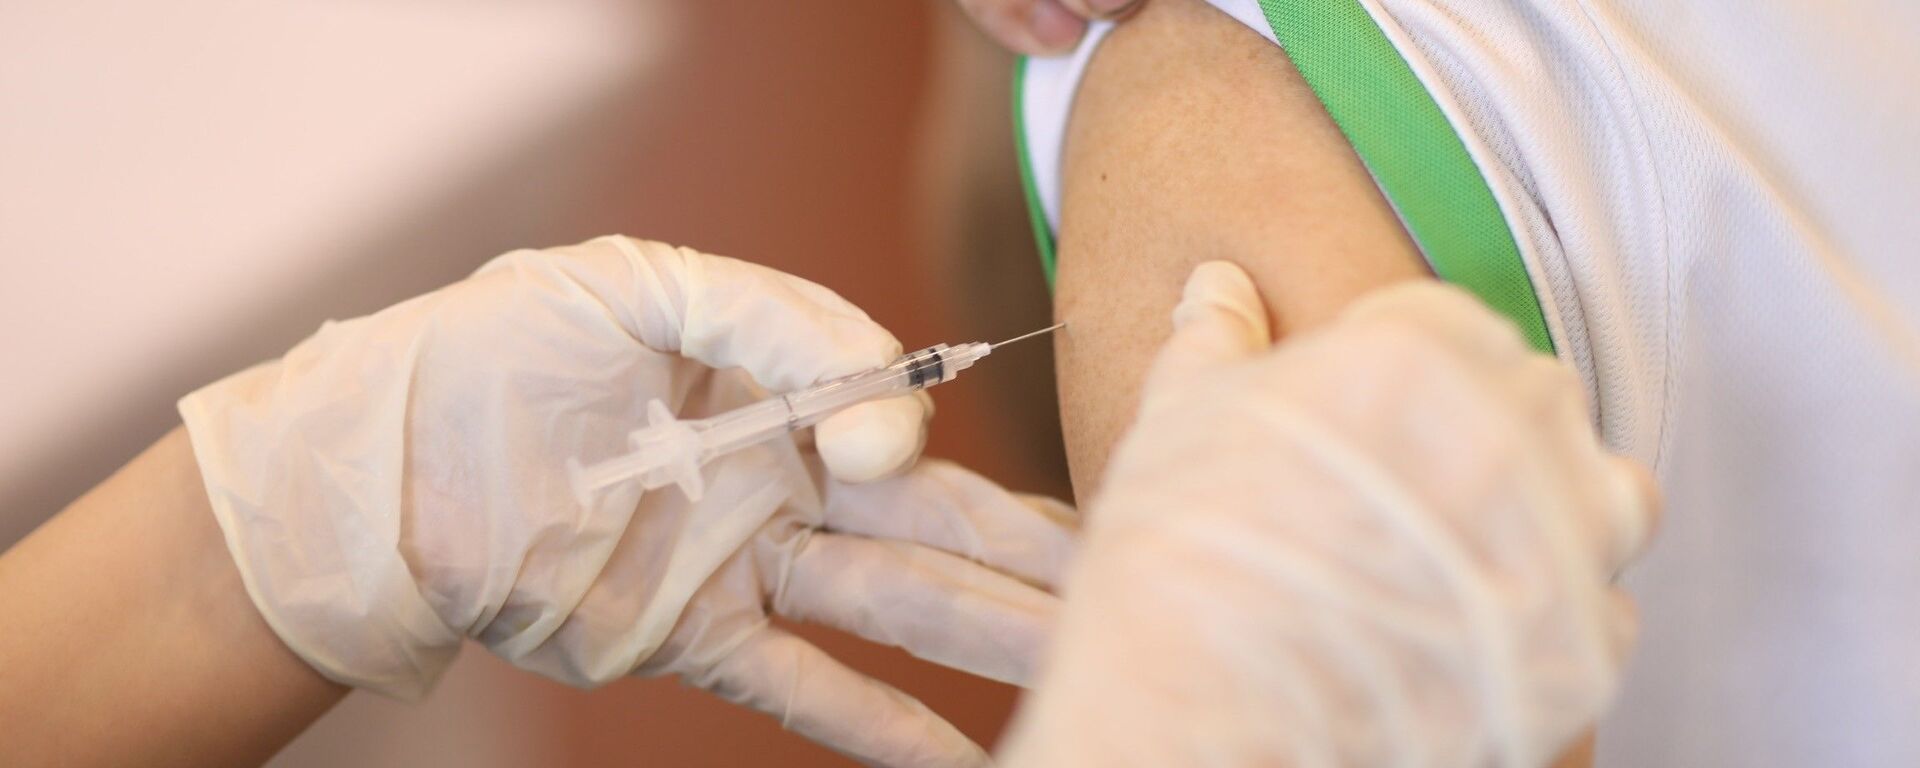 Nhân viên y tế tiêm vaccine phòng COVID-19 cho người dân quận Hoàn Kiếm, chiều 15/9/2021. - Sputnik Việt Nam, 1920, 25.10.2021